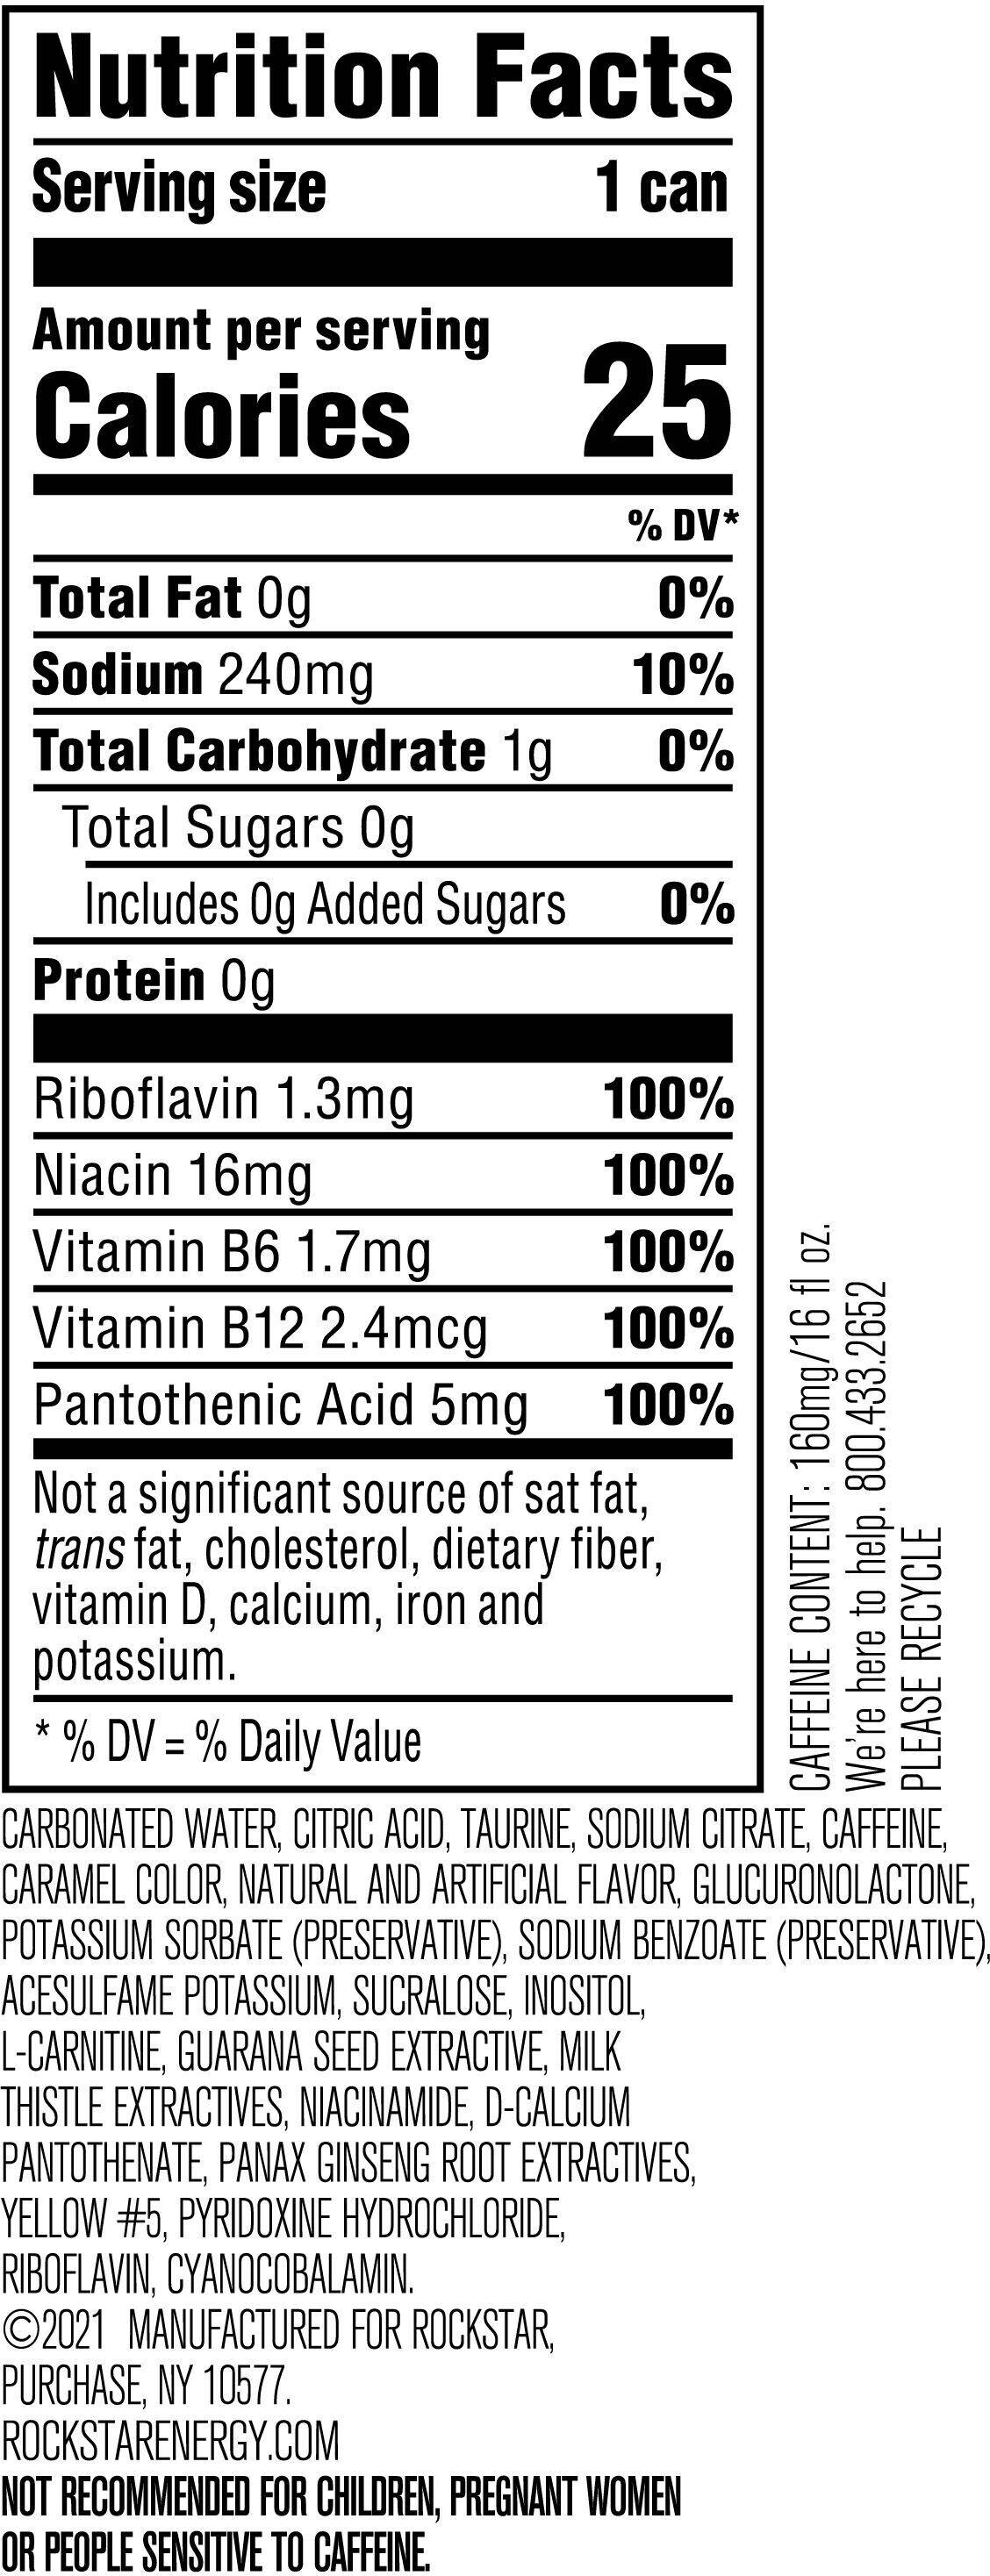 Image describing nutrition information for product Rockstar Sugar Free